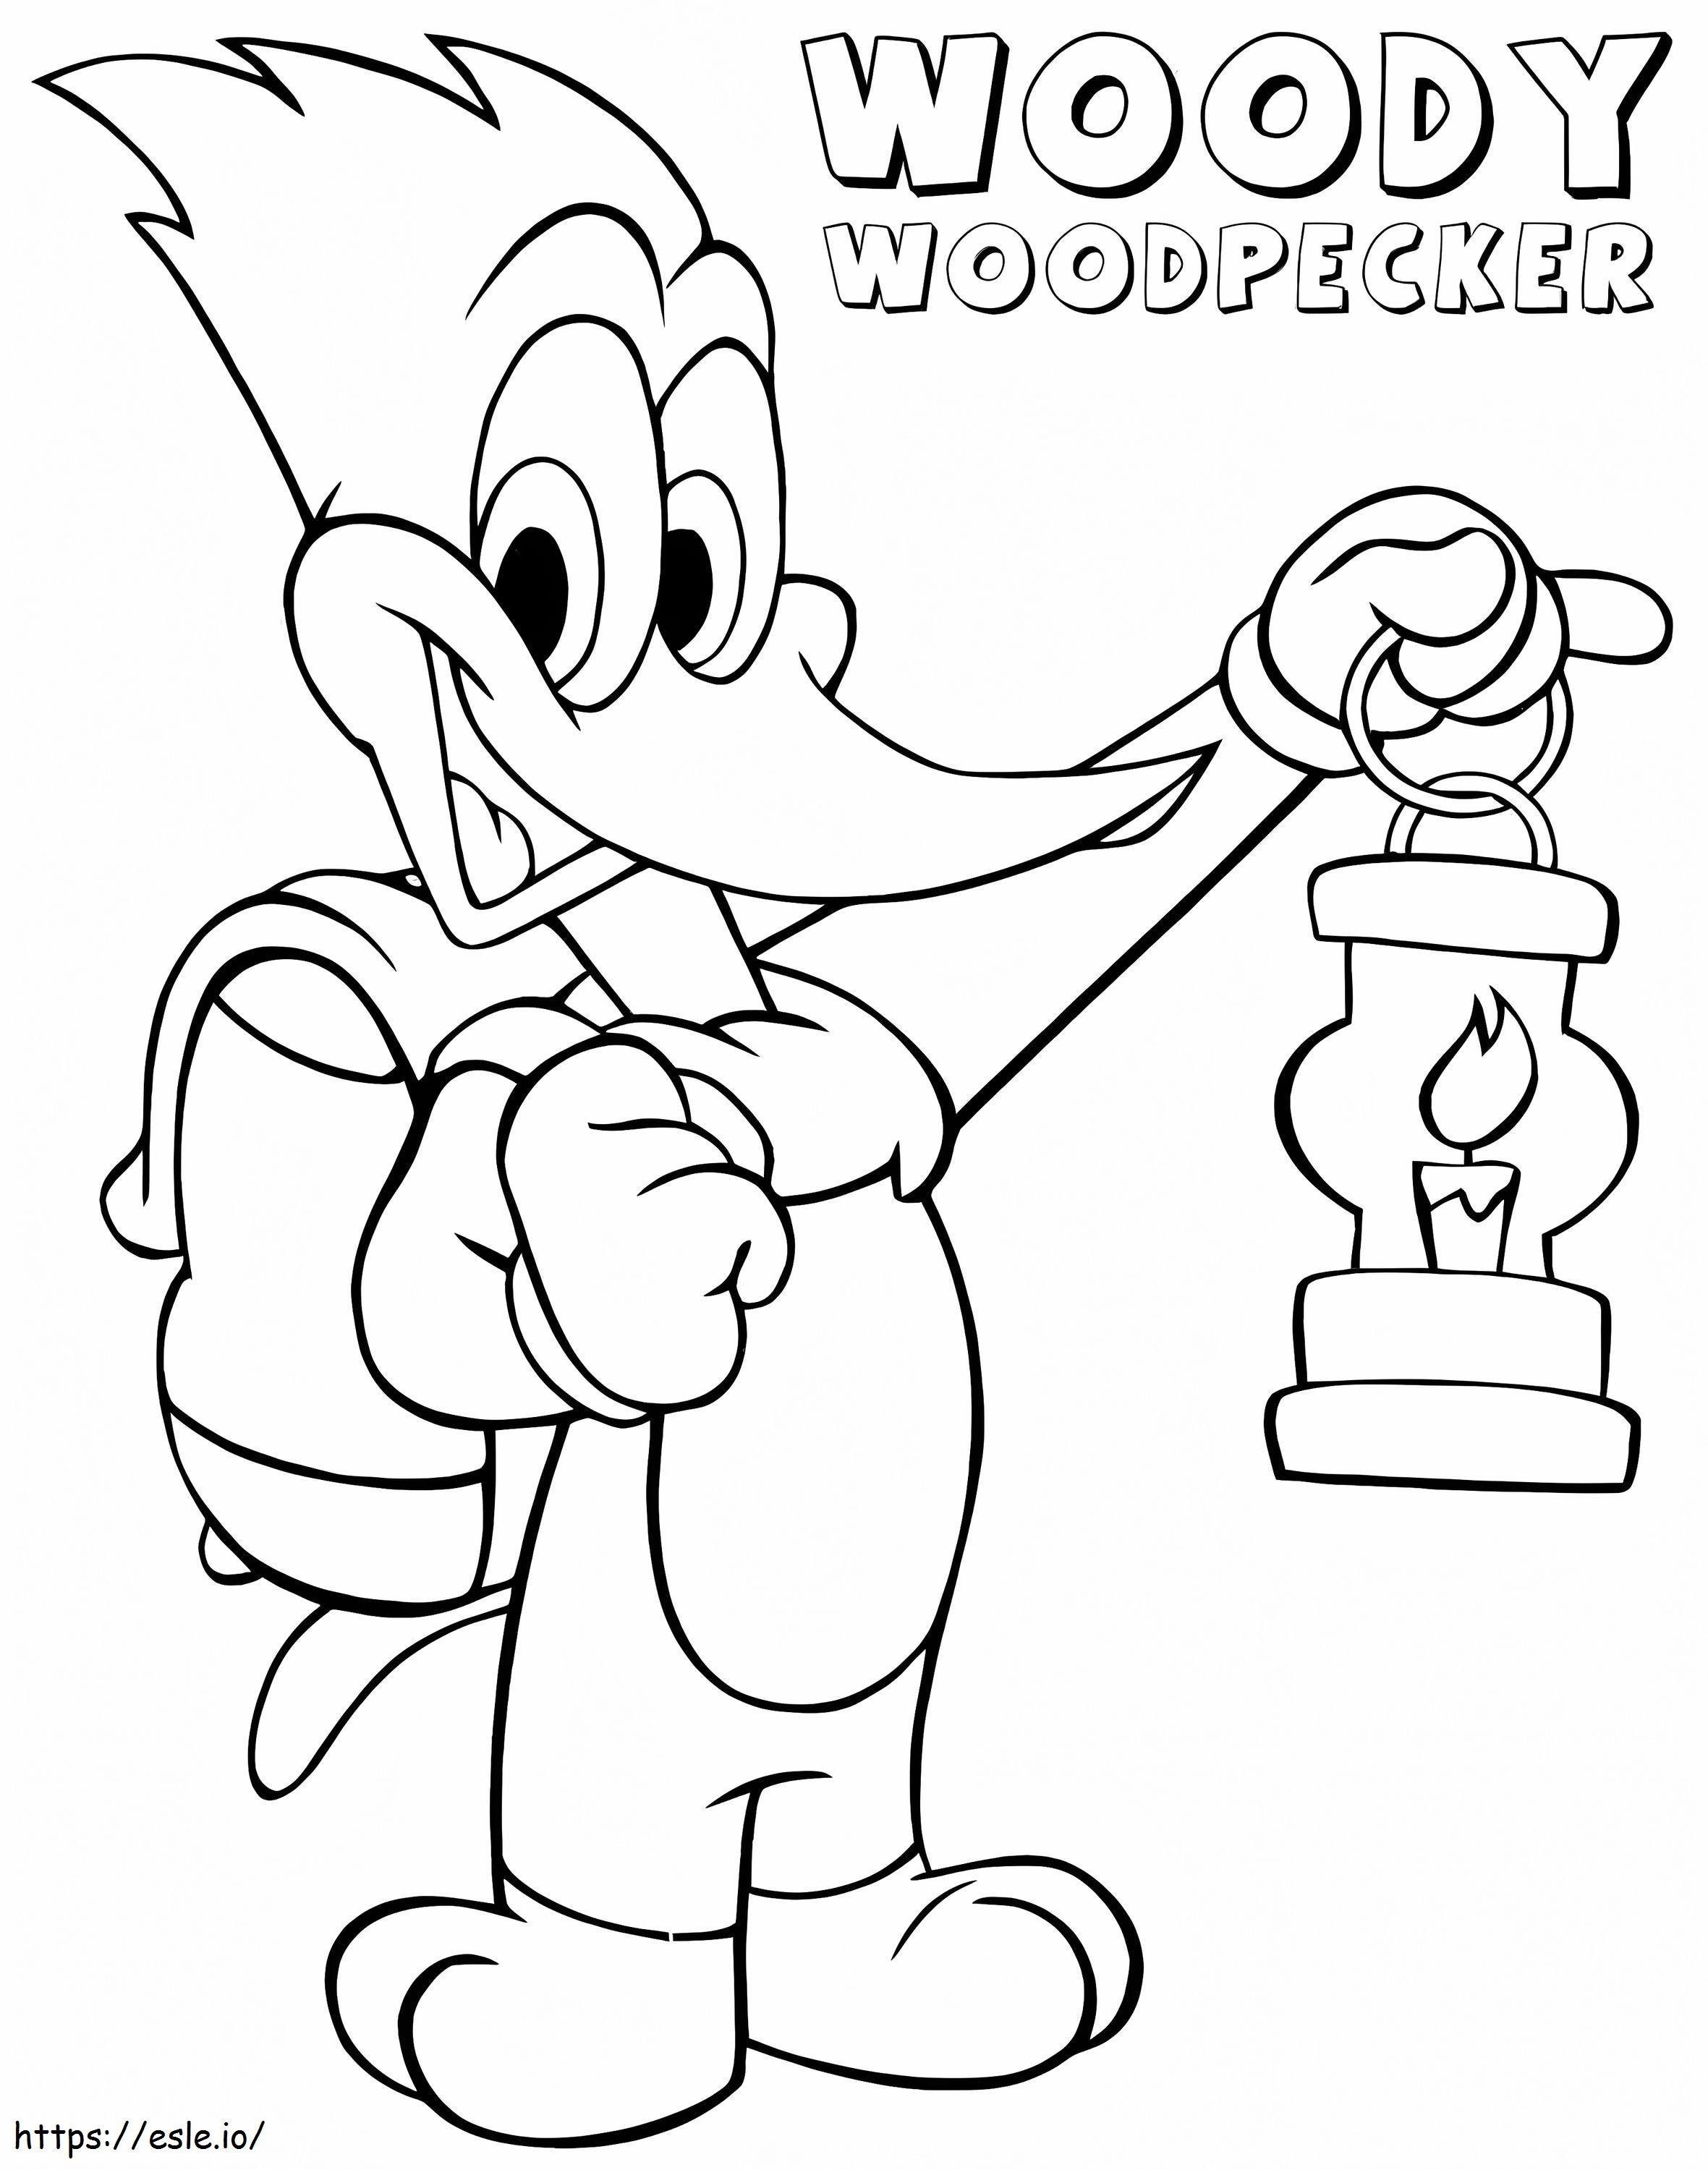 Coloriage Woody Woodpecker avec lampe à huile à imprimer dessin